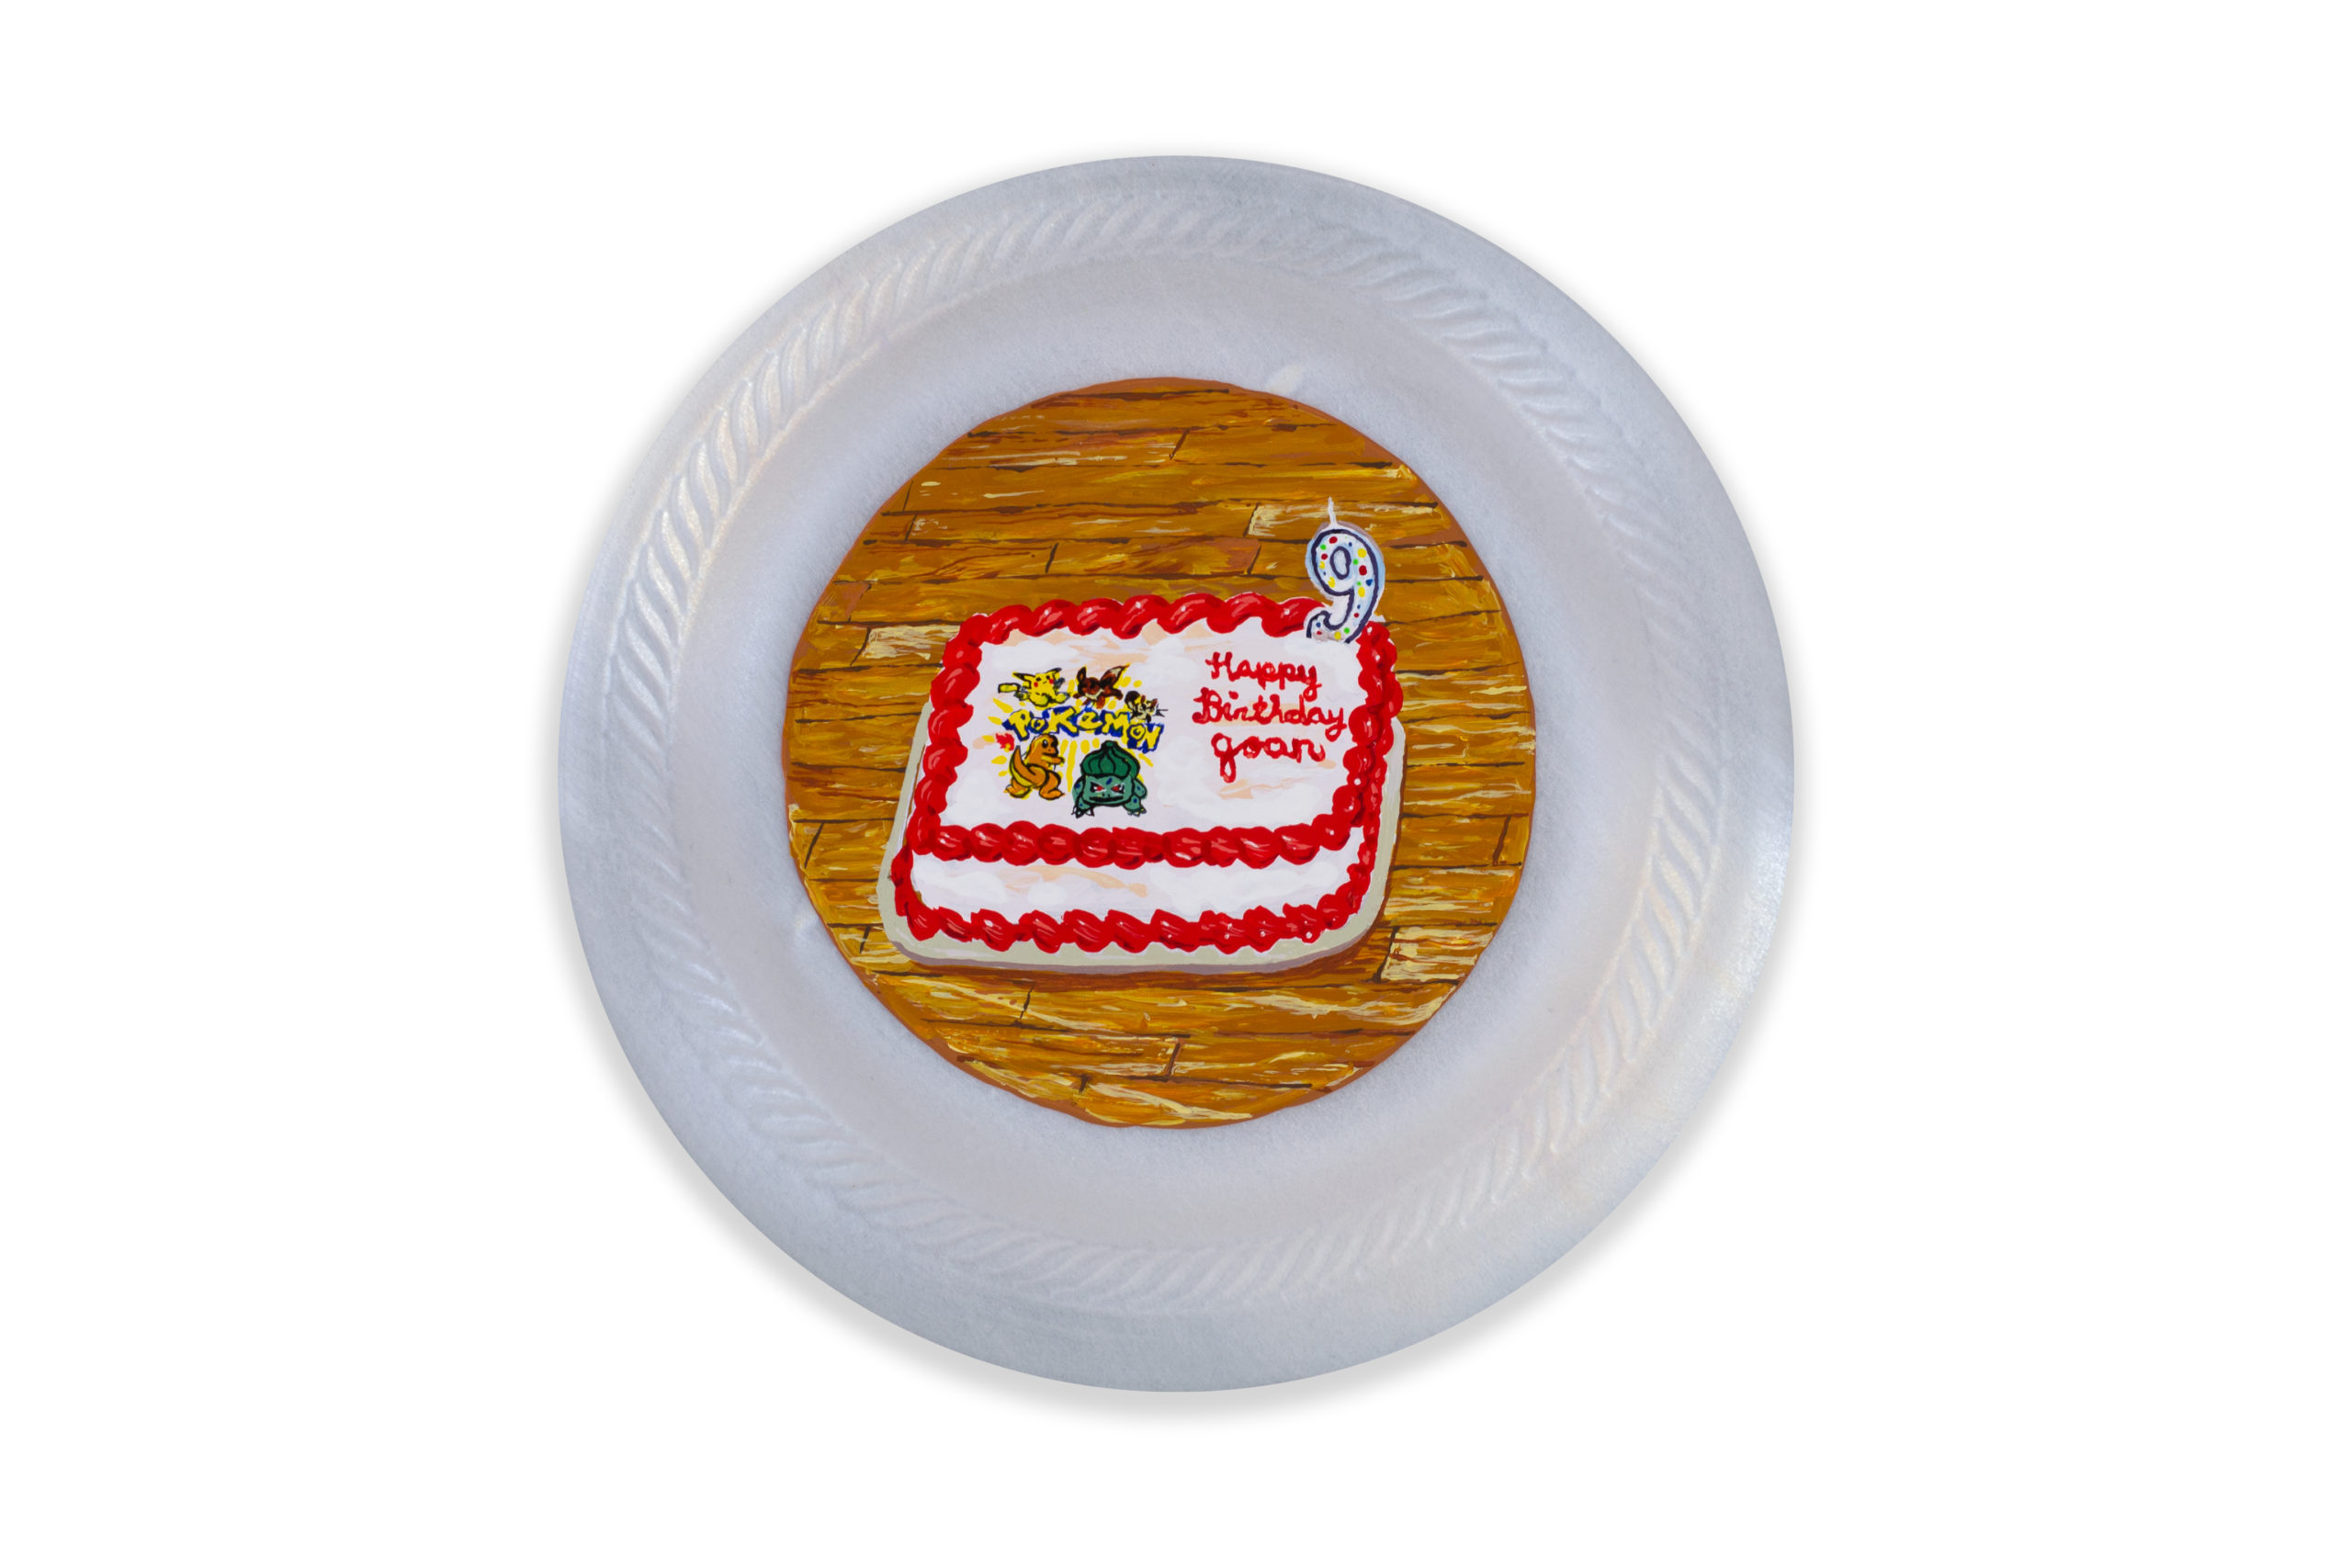 

											Fernando Andrade</b>

											<em>
												Homemade Cakes and Piñatas</em> 

											<h4>
												Santa Fe: June 10 – August 27, 2022											</h4>

		                																																													<i>Pastel de Fresa,</i>  
																																								2022, 
																																								Acrylic on Primed Styrofoam Plate, 
																																								6 inches in diameter 
																								
		                				